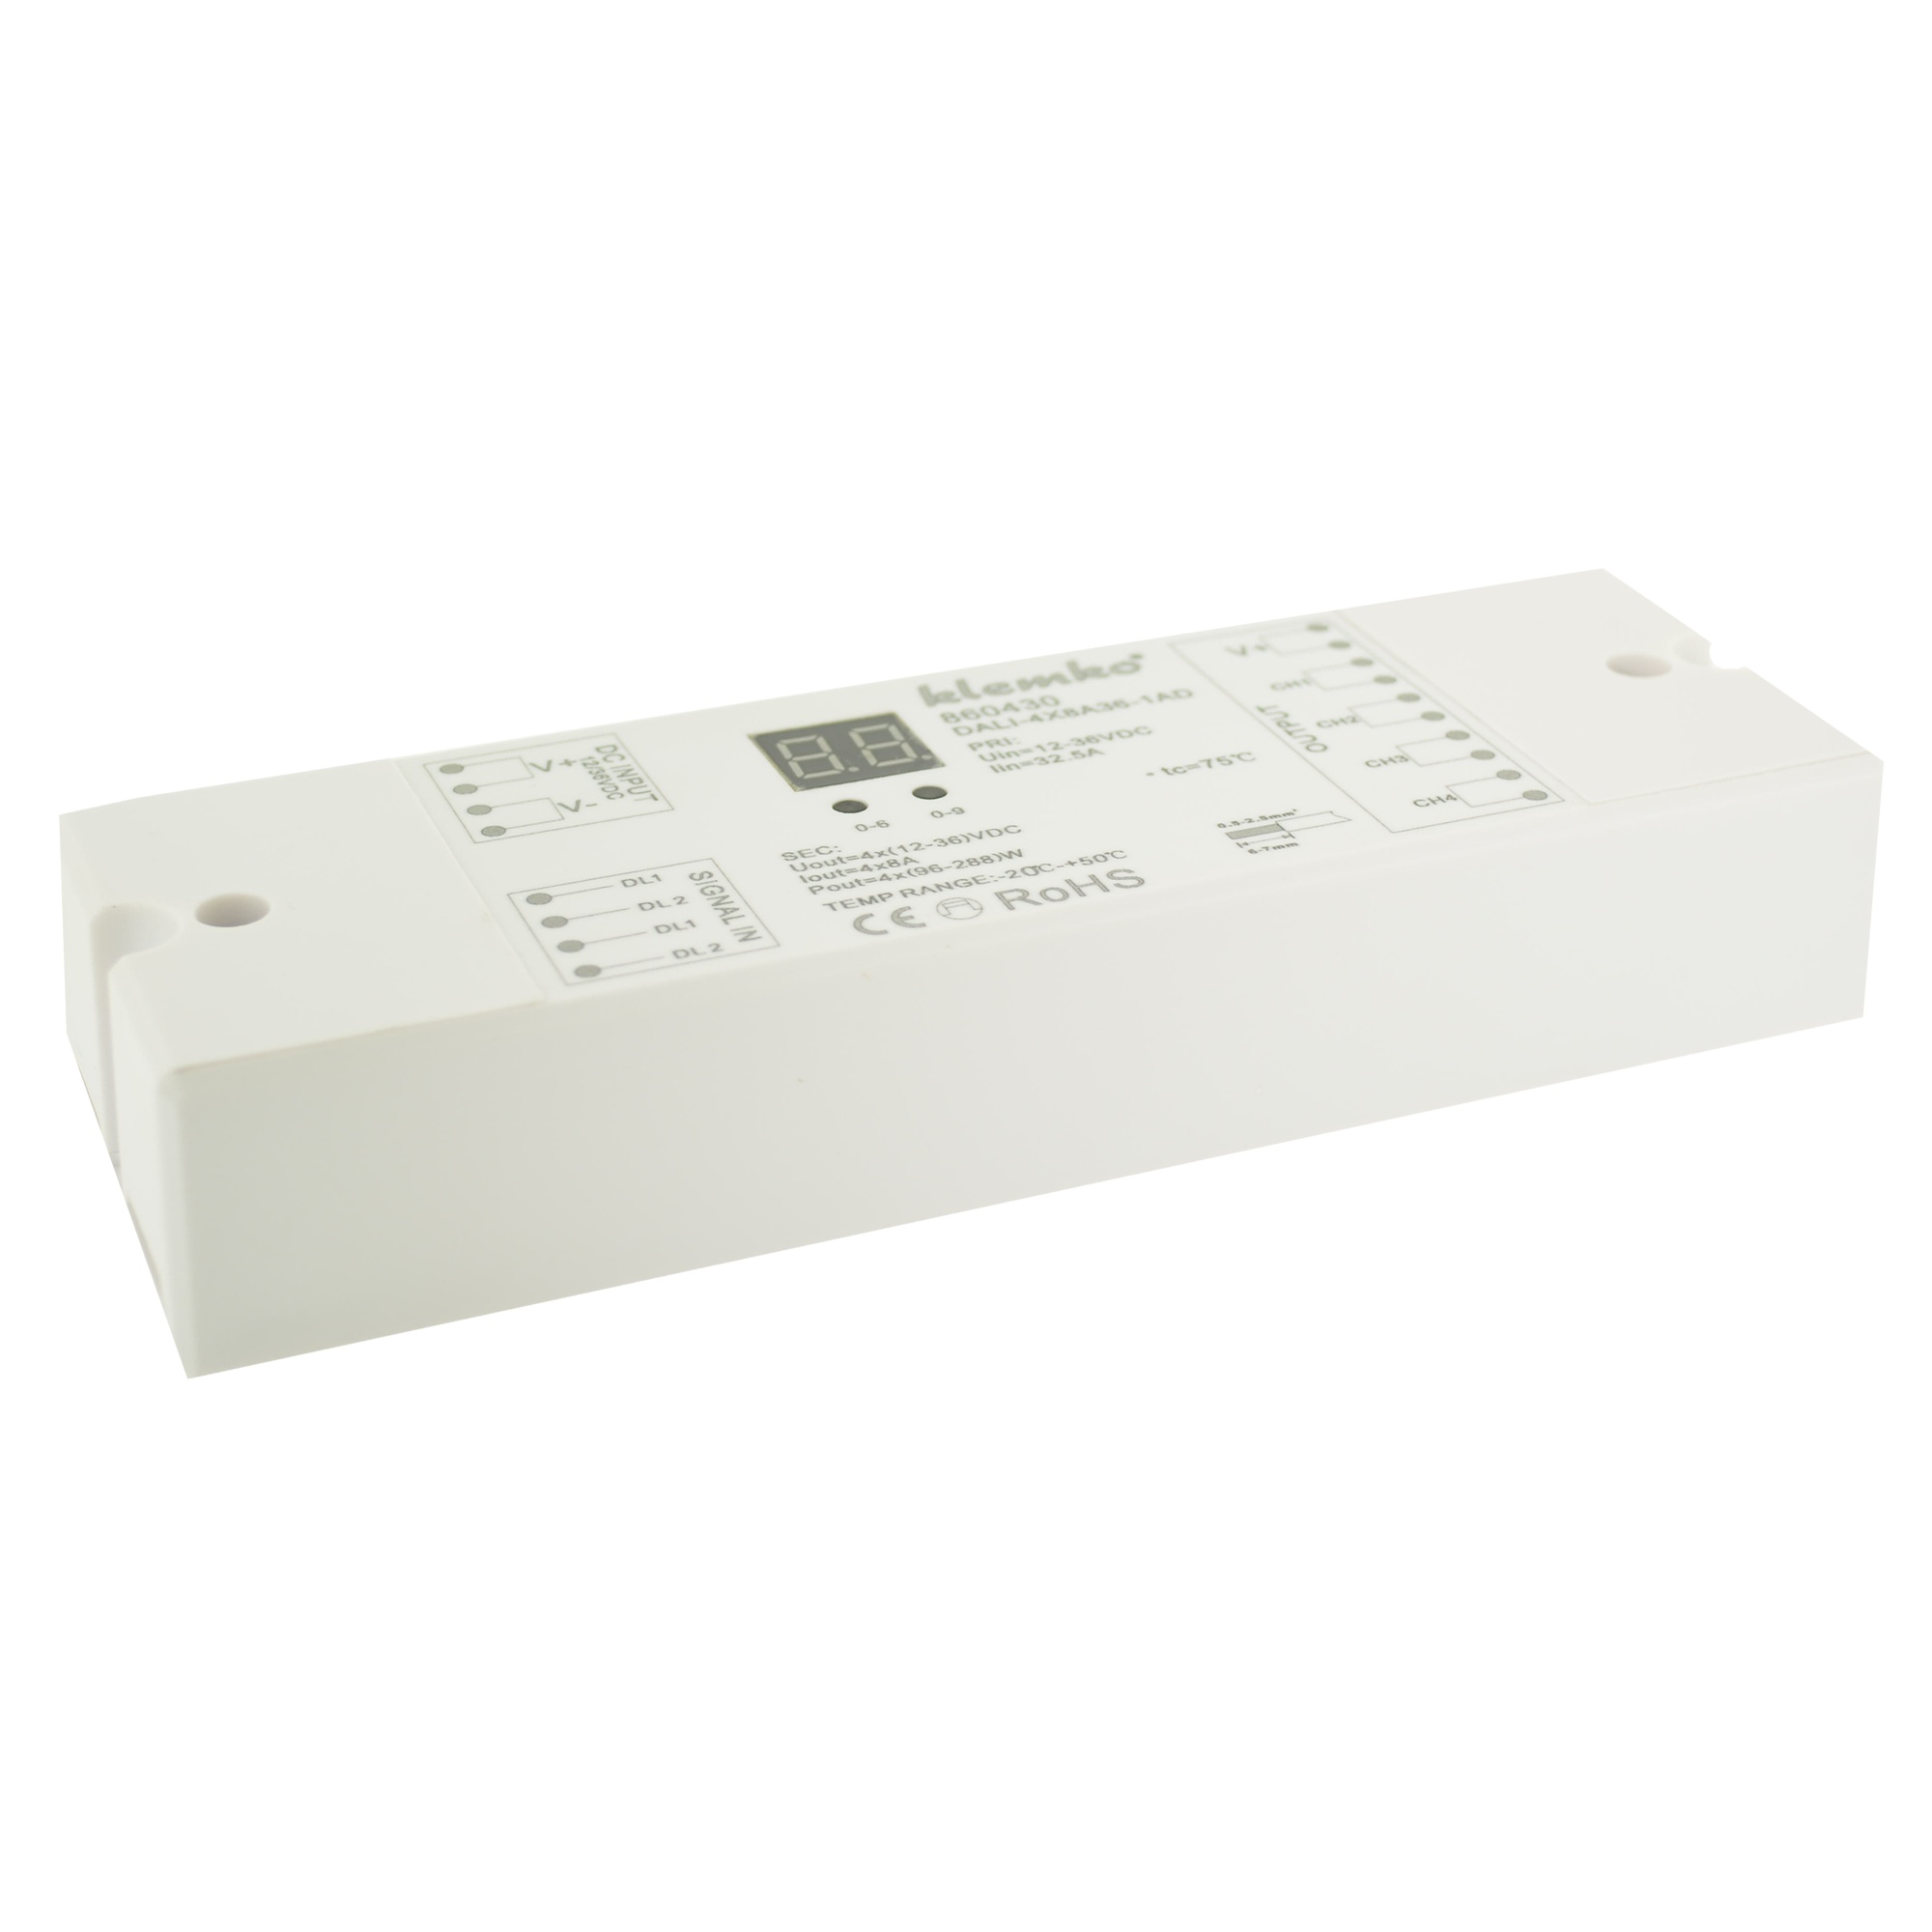 KLEMKO 860430 Kleurcontroller voor Led DALI-4X8A36-1AD Dali controller constante spanning, 1 adres voor 4 uitgangen